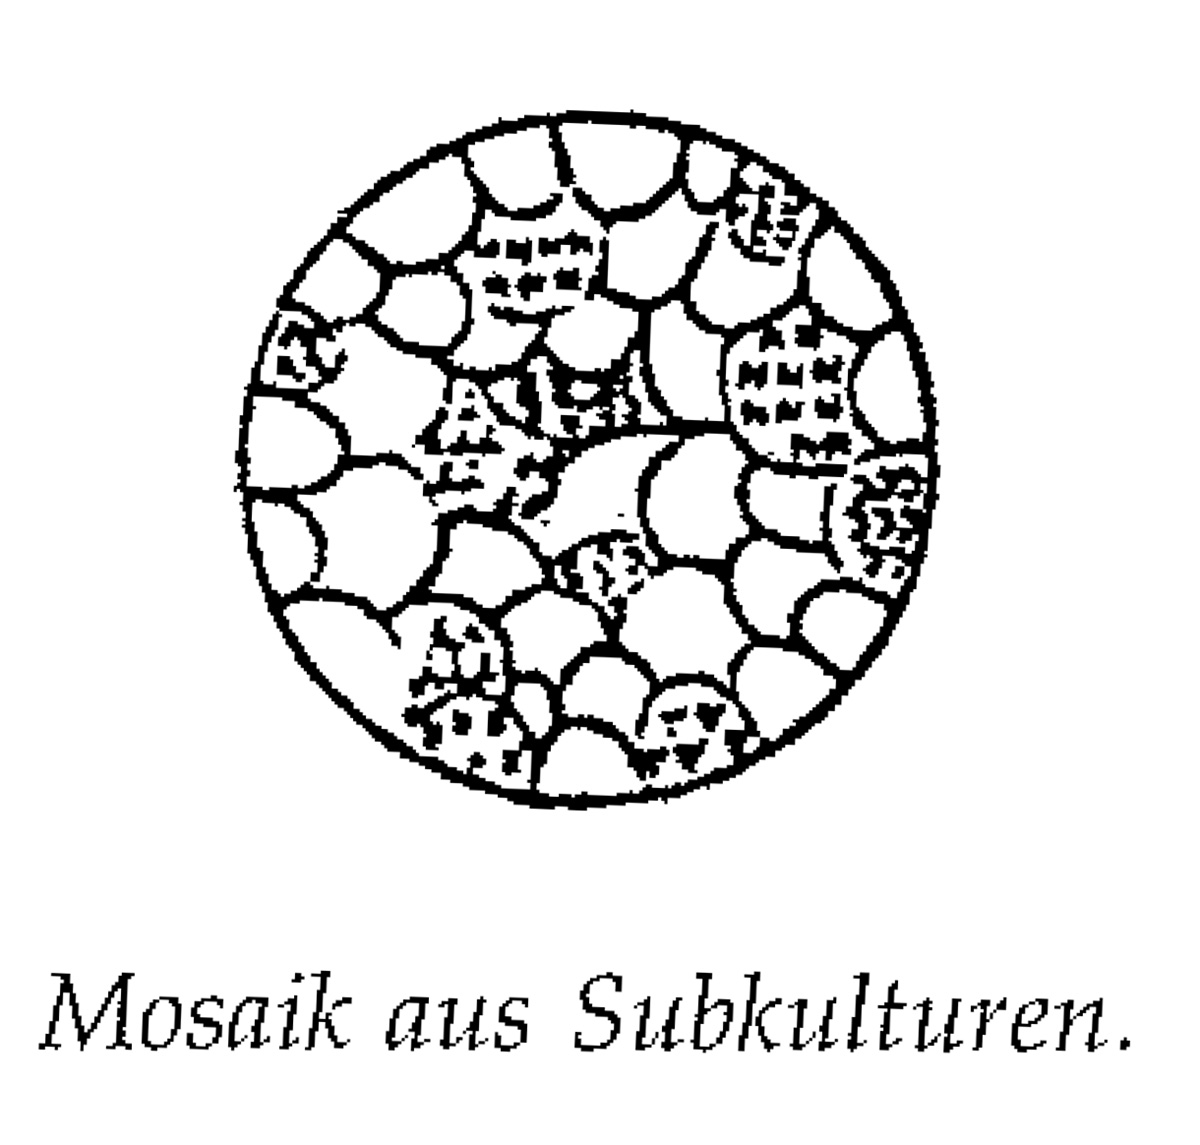 Eine Muster Sprache   8 MOSAIK AUS SUBKULTUREN   Mosaik aus Subkulturen